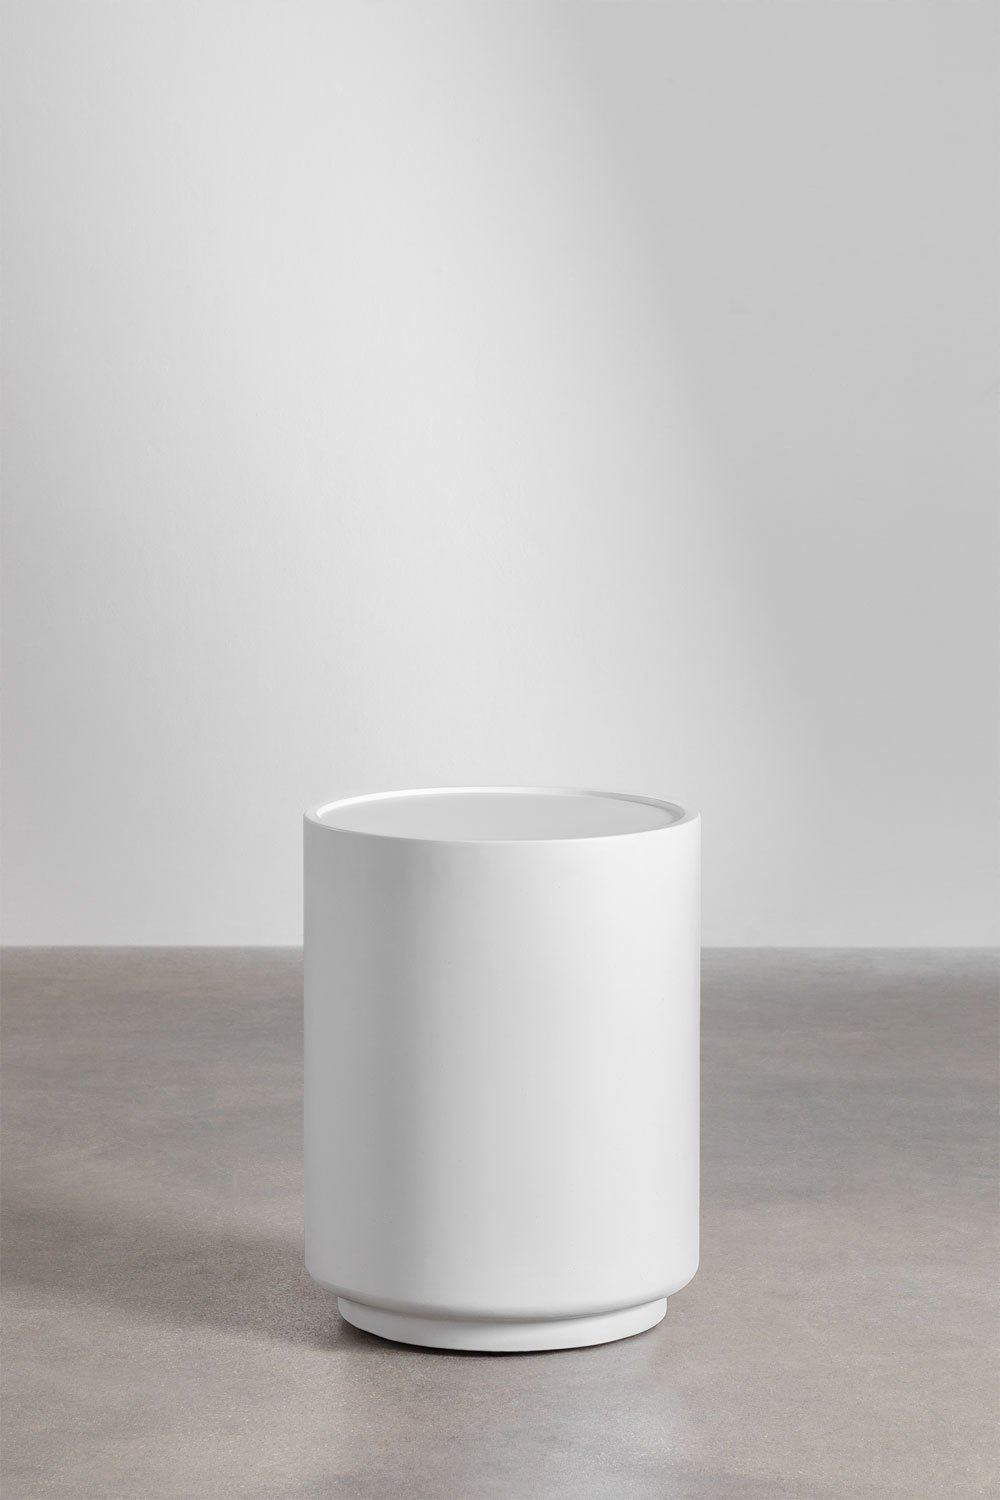 Table d'appoint ronde en ciment (Ø35 cm) Darwys, image de la galerie 1